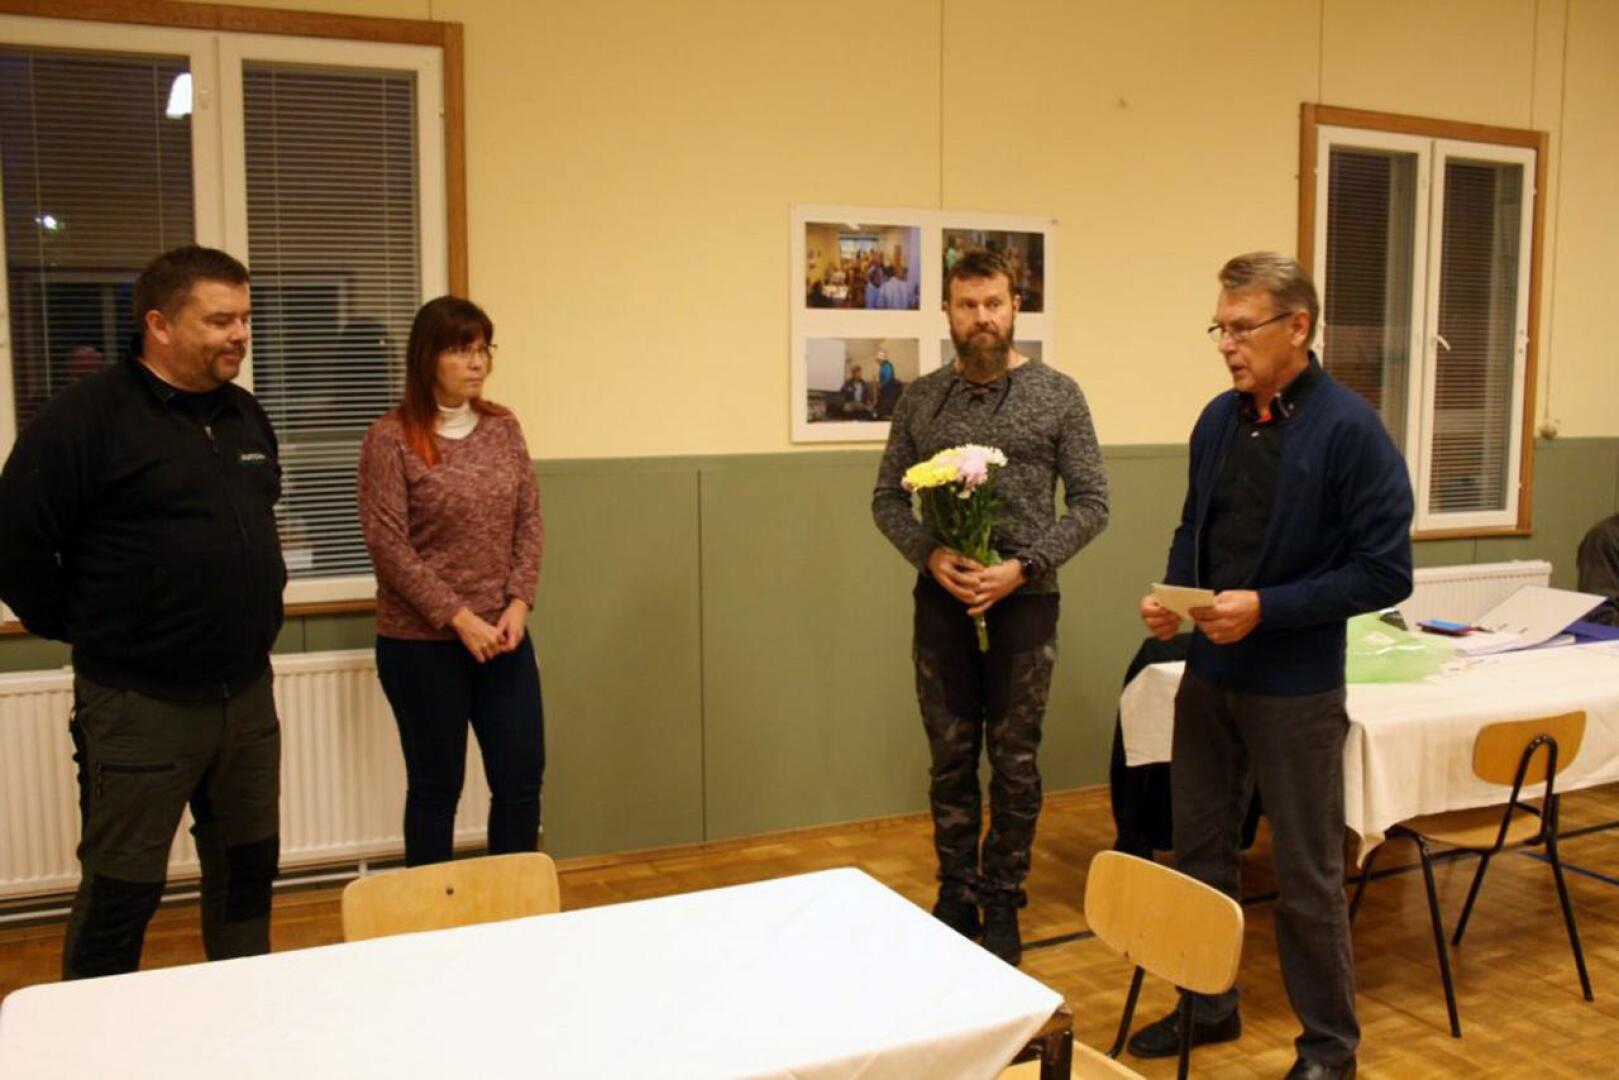 Lions Clubin kulttuuripalkinnon vastaanottivat Ylikylän kyläyhdistyksestä Harri Simola ja Minna Miettinen. Palkinnon luovuttivat Janne Hietalahti ja Allan Kauppinen.